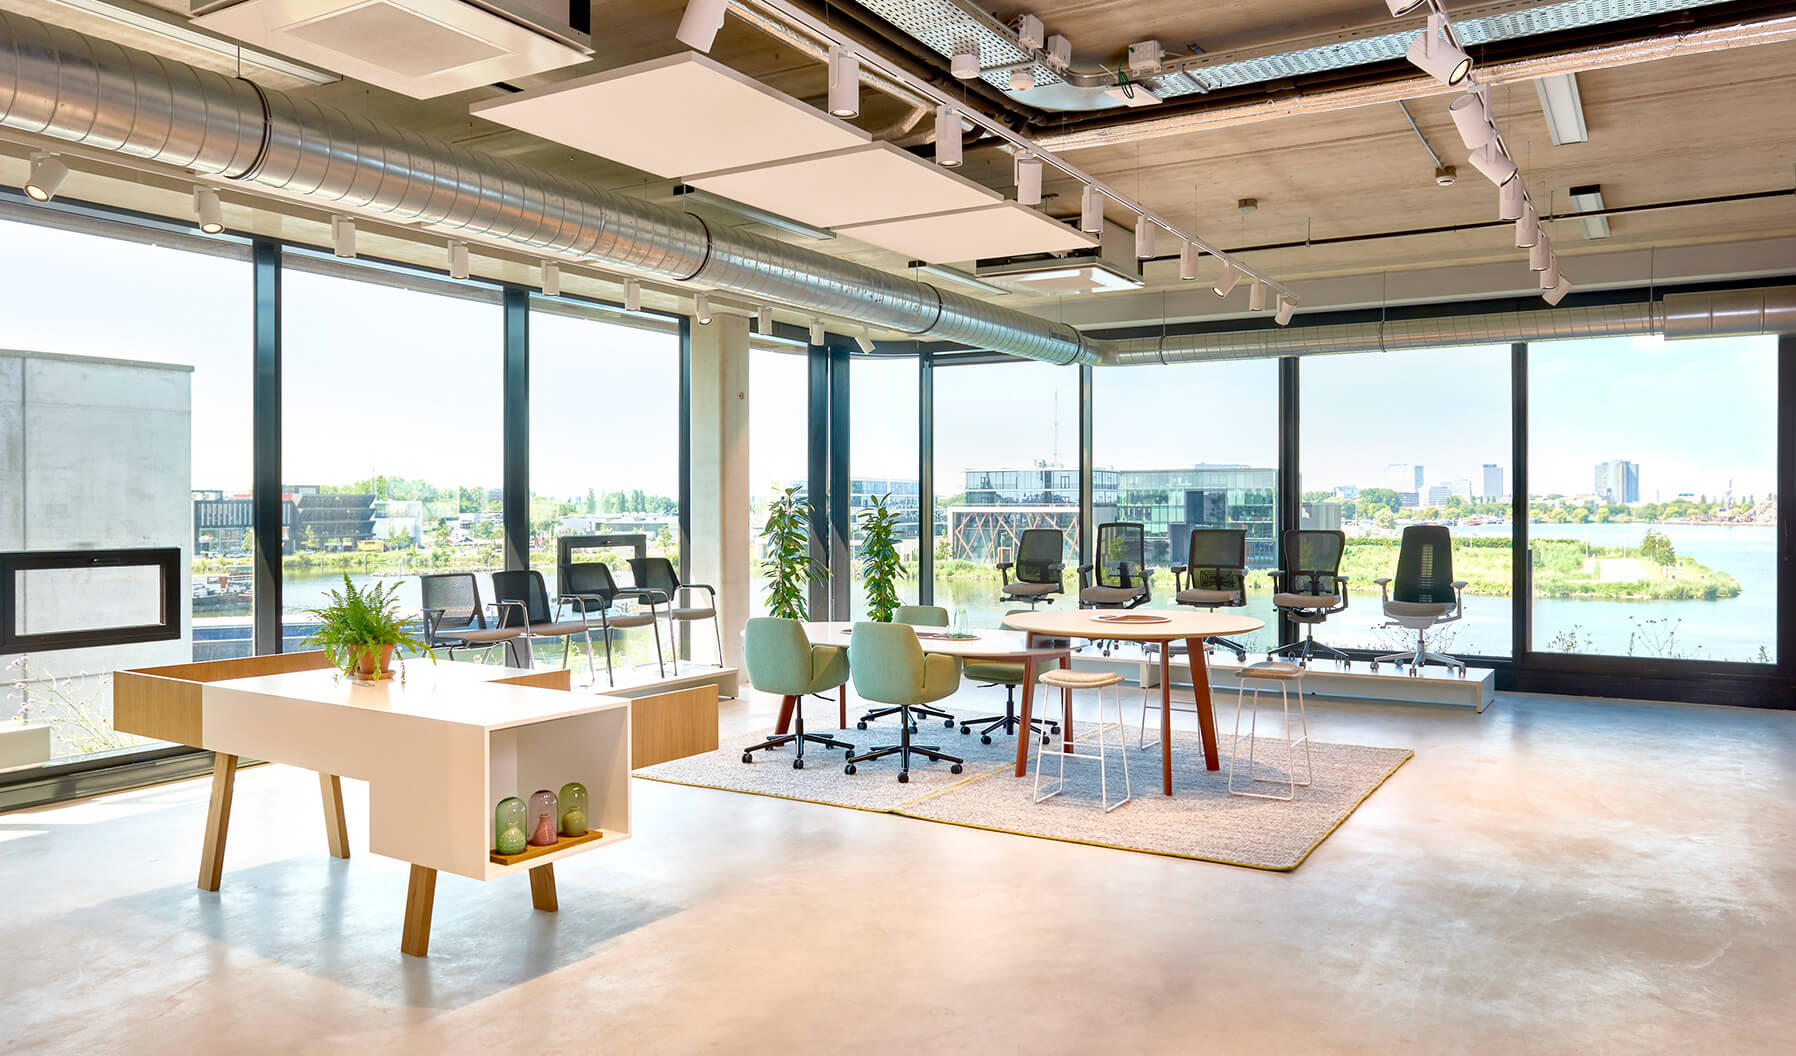 Der Teamwork-Bereich begeistert die Besucher mit einem Panoramablick auf den Hafen und Modellen aus dem Stühle & Sitzmöbel-Portfolio von Haworth. Immerse Table eignet sich für formale Konferenzräume.